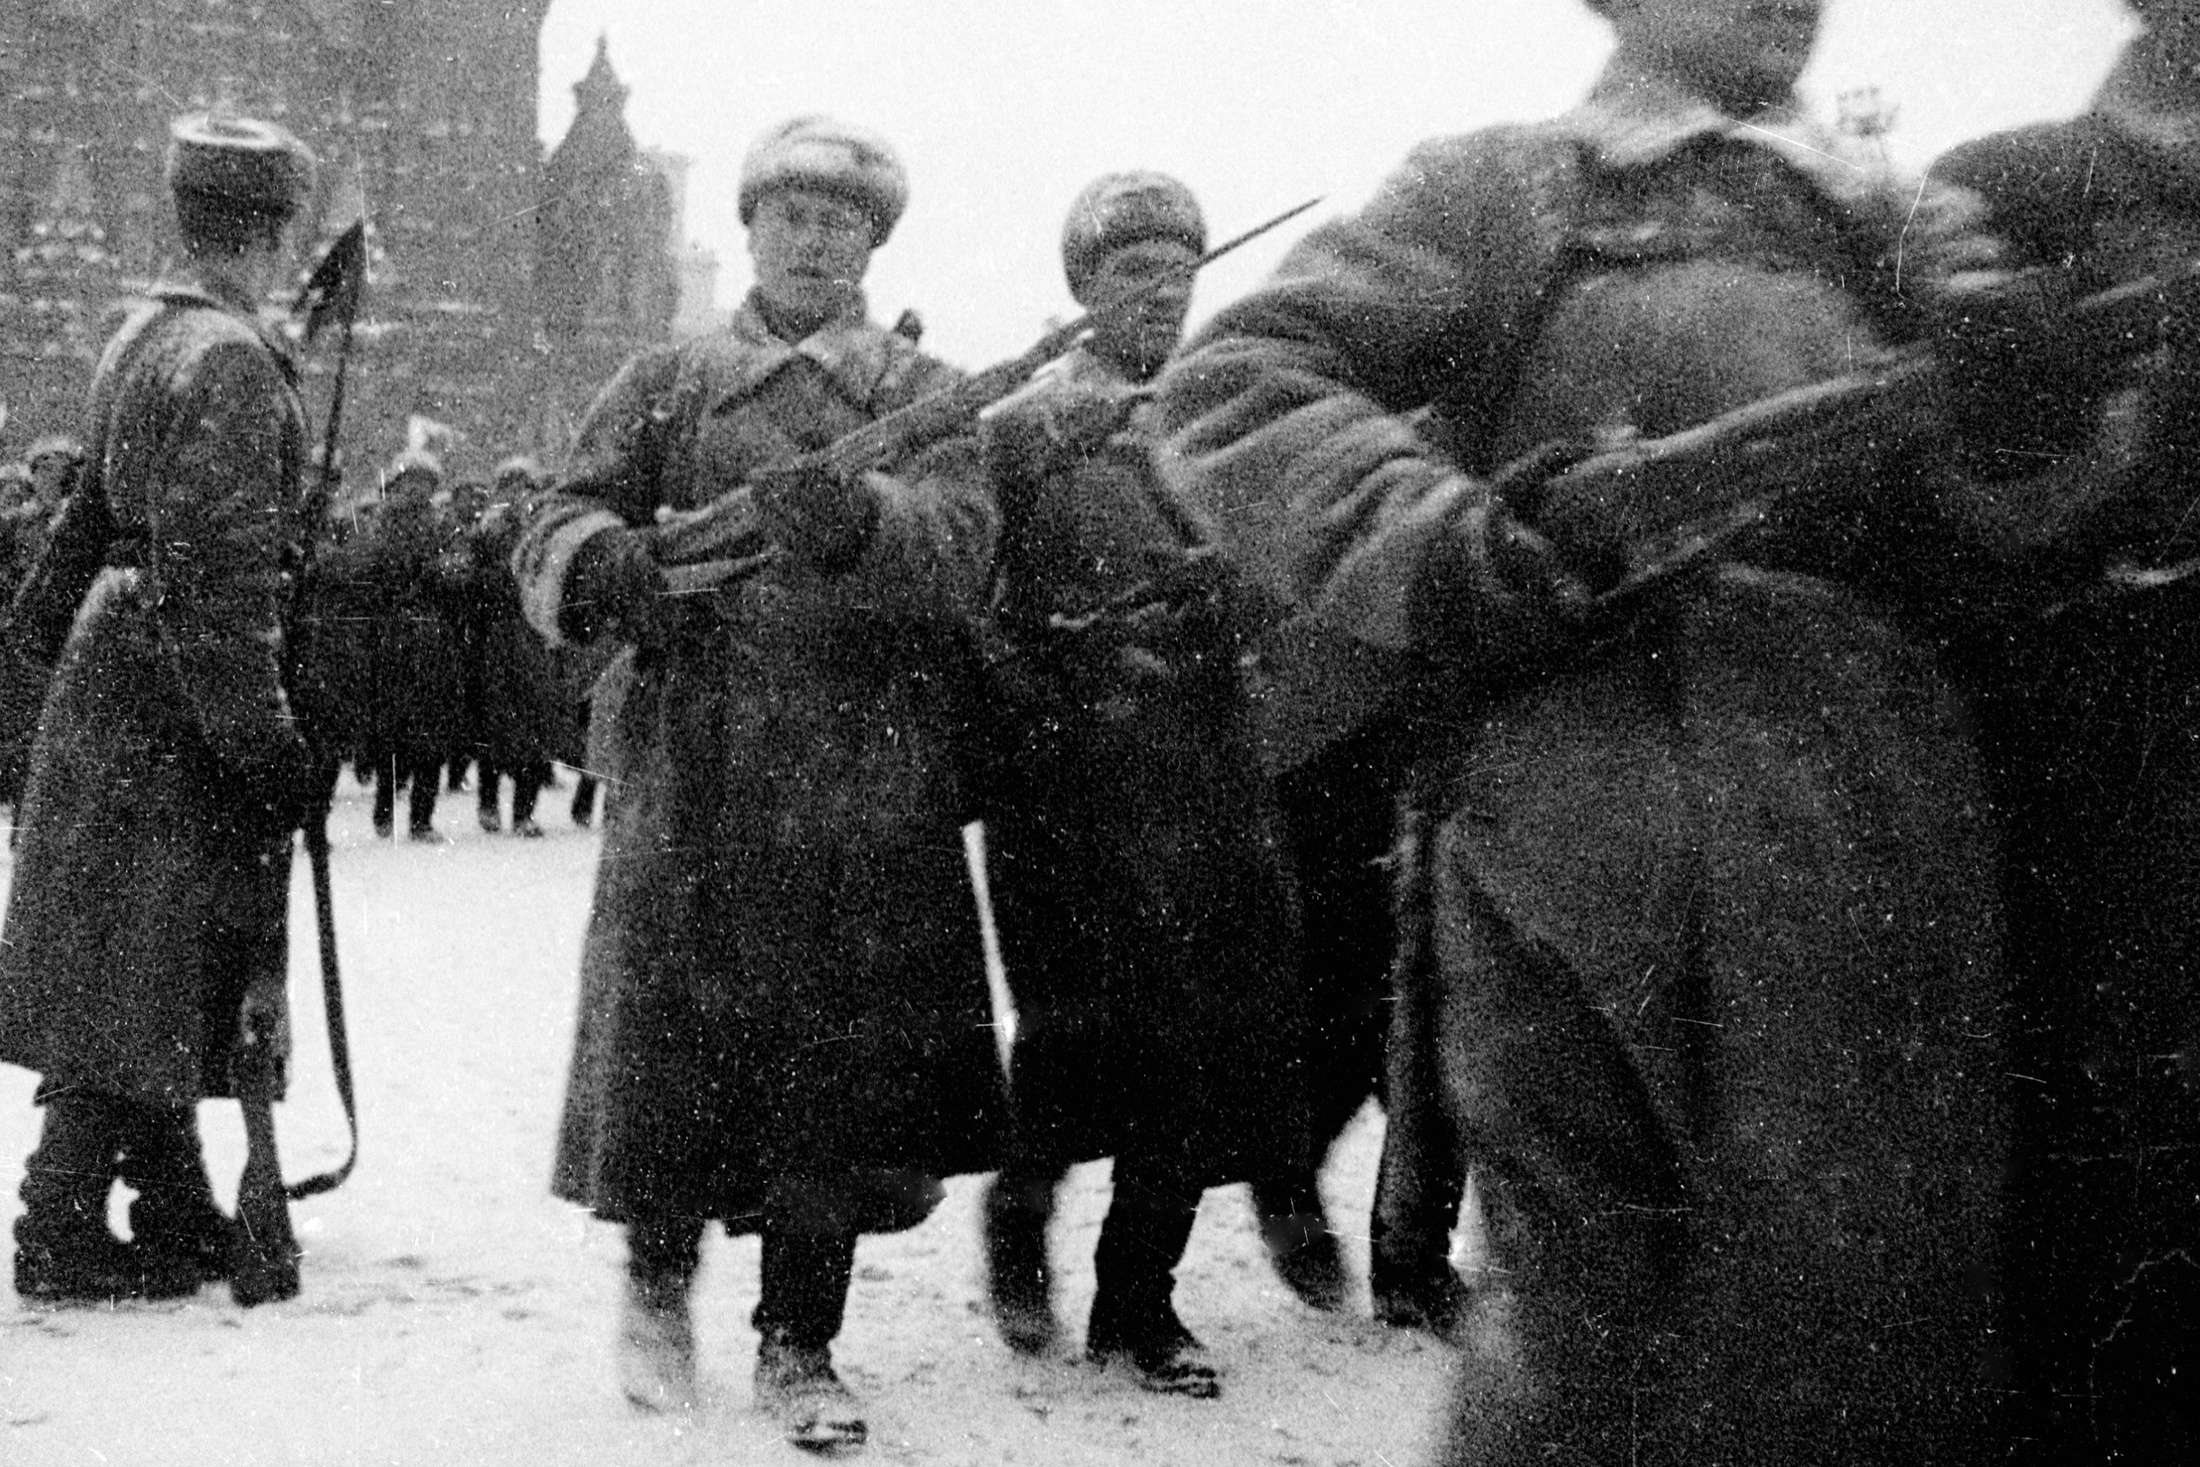 парад на красной площади в ноябре 1941 года